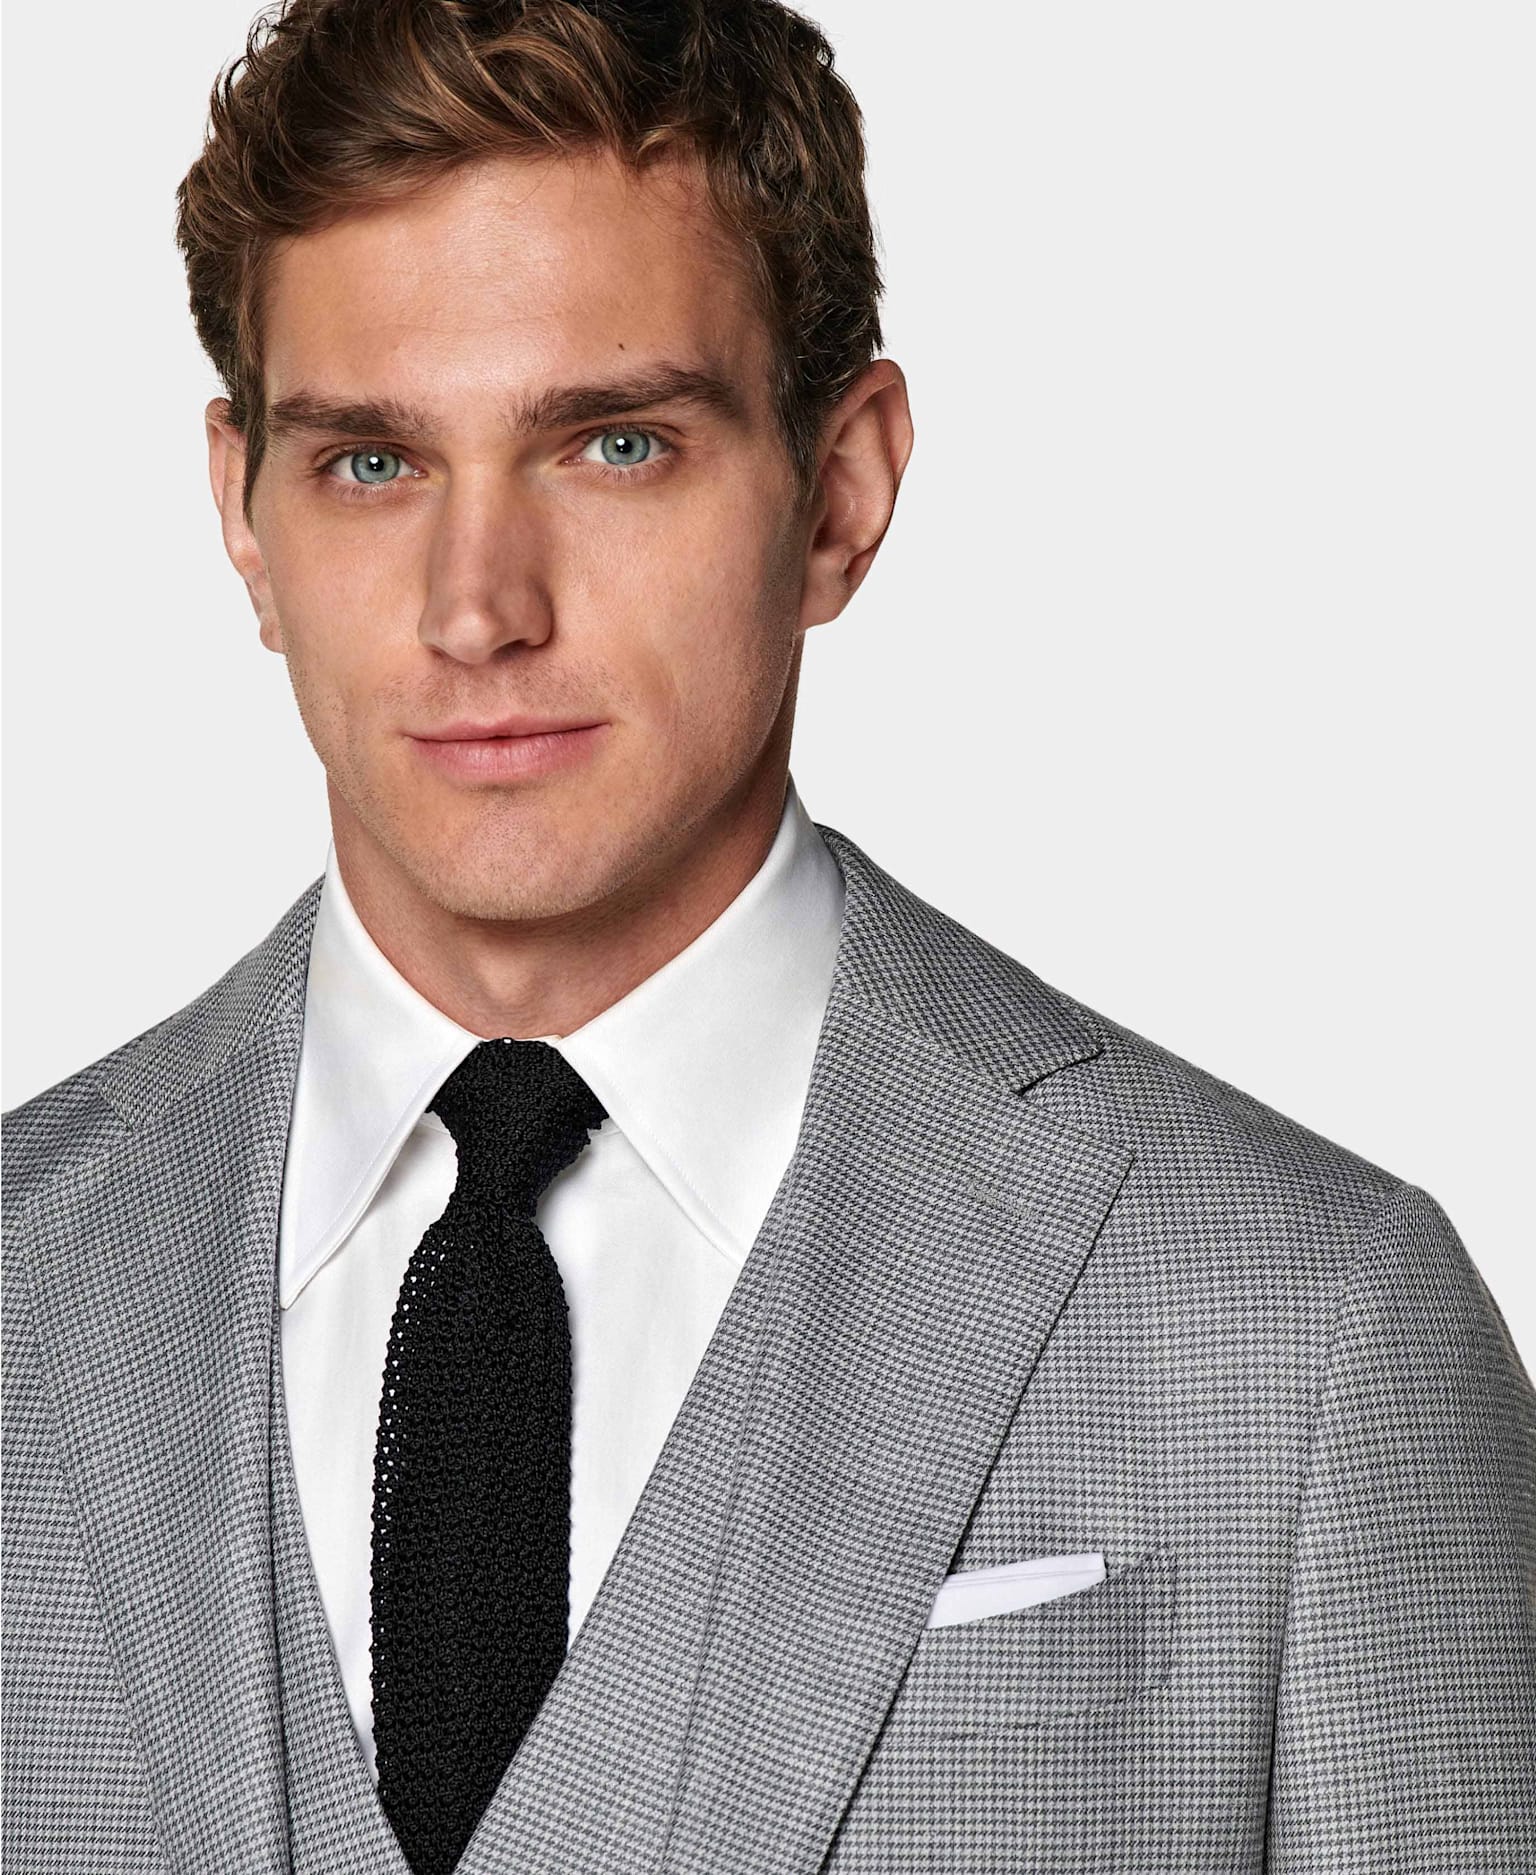 Dettaglio di abito tre pezzi grigio con quadretto pied-de-poule, camicia bianca, cravatta nera in seta lavorata a maglia, e pochette bianca.